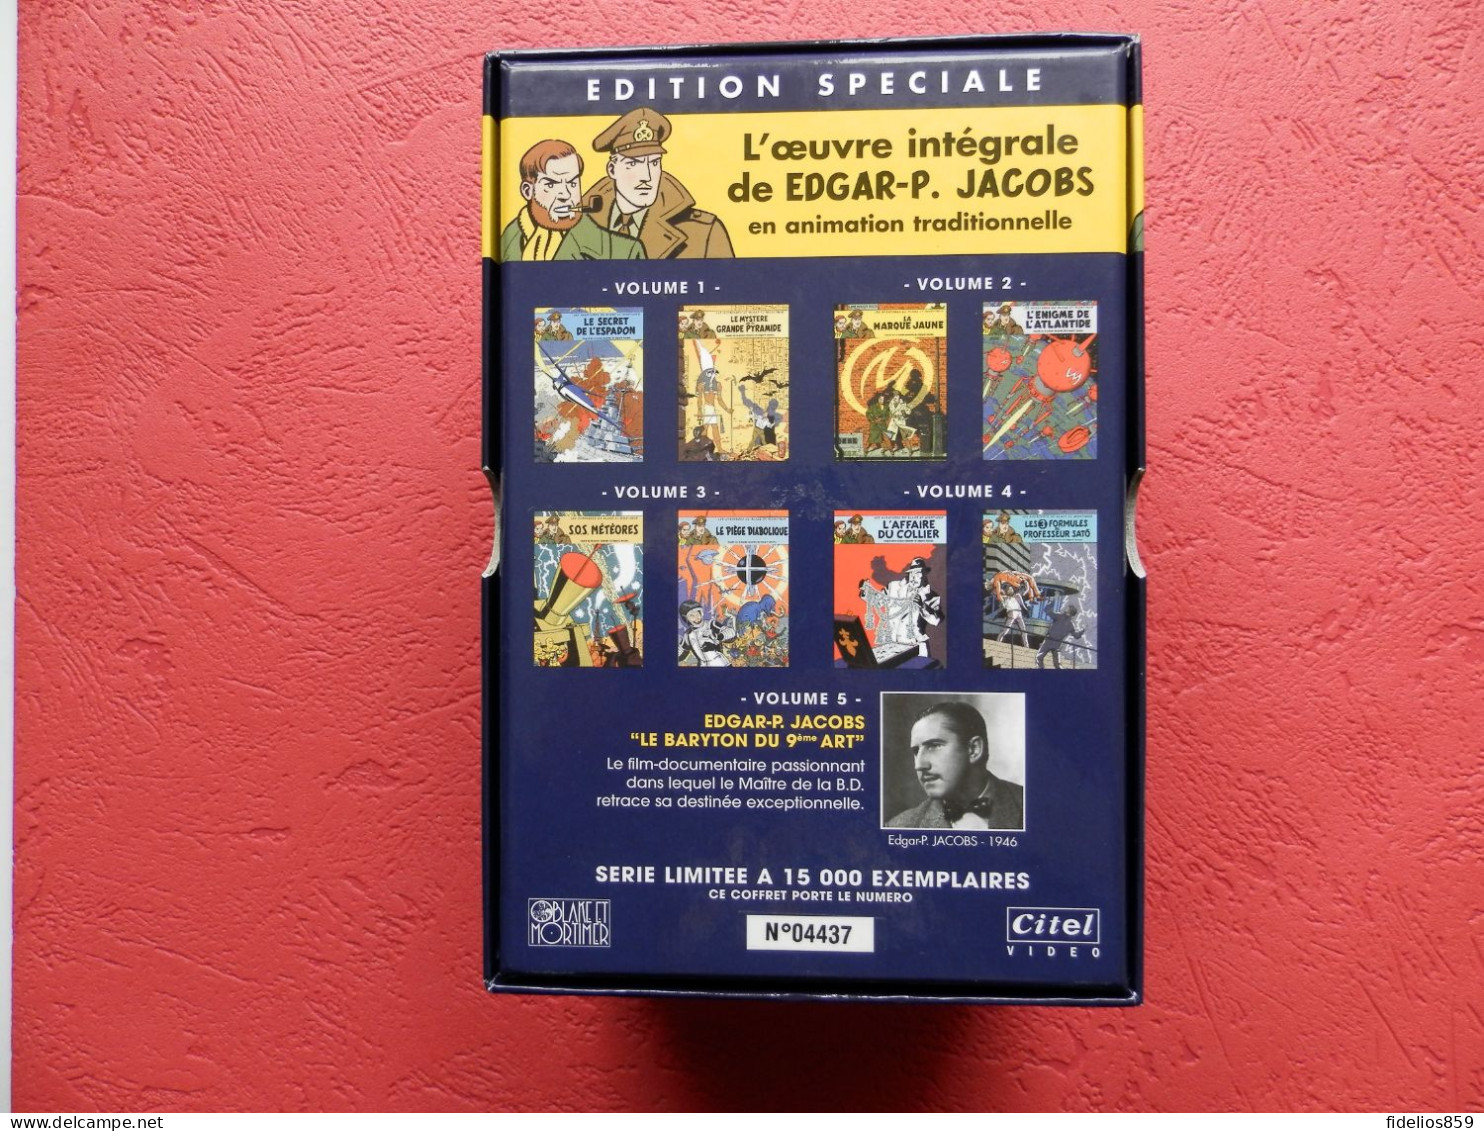 BLAKE ET MORTIMER PAR JACOBS : COFFRET COLLECTOR TIRAGE LIMITE ETNUMEROTE TTB - Cassettes & DVD